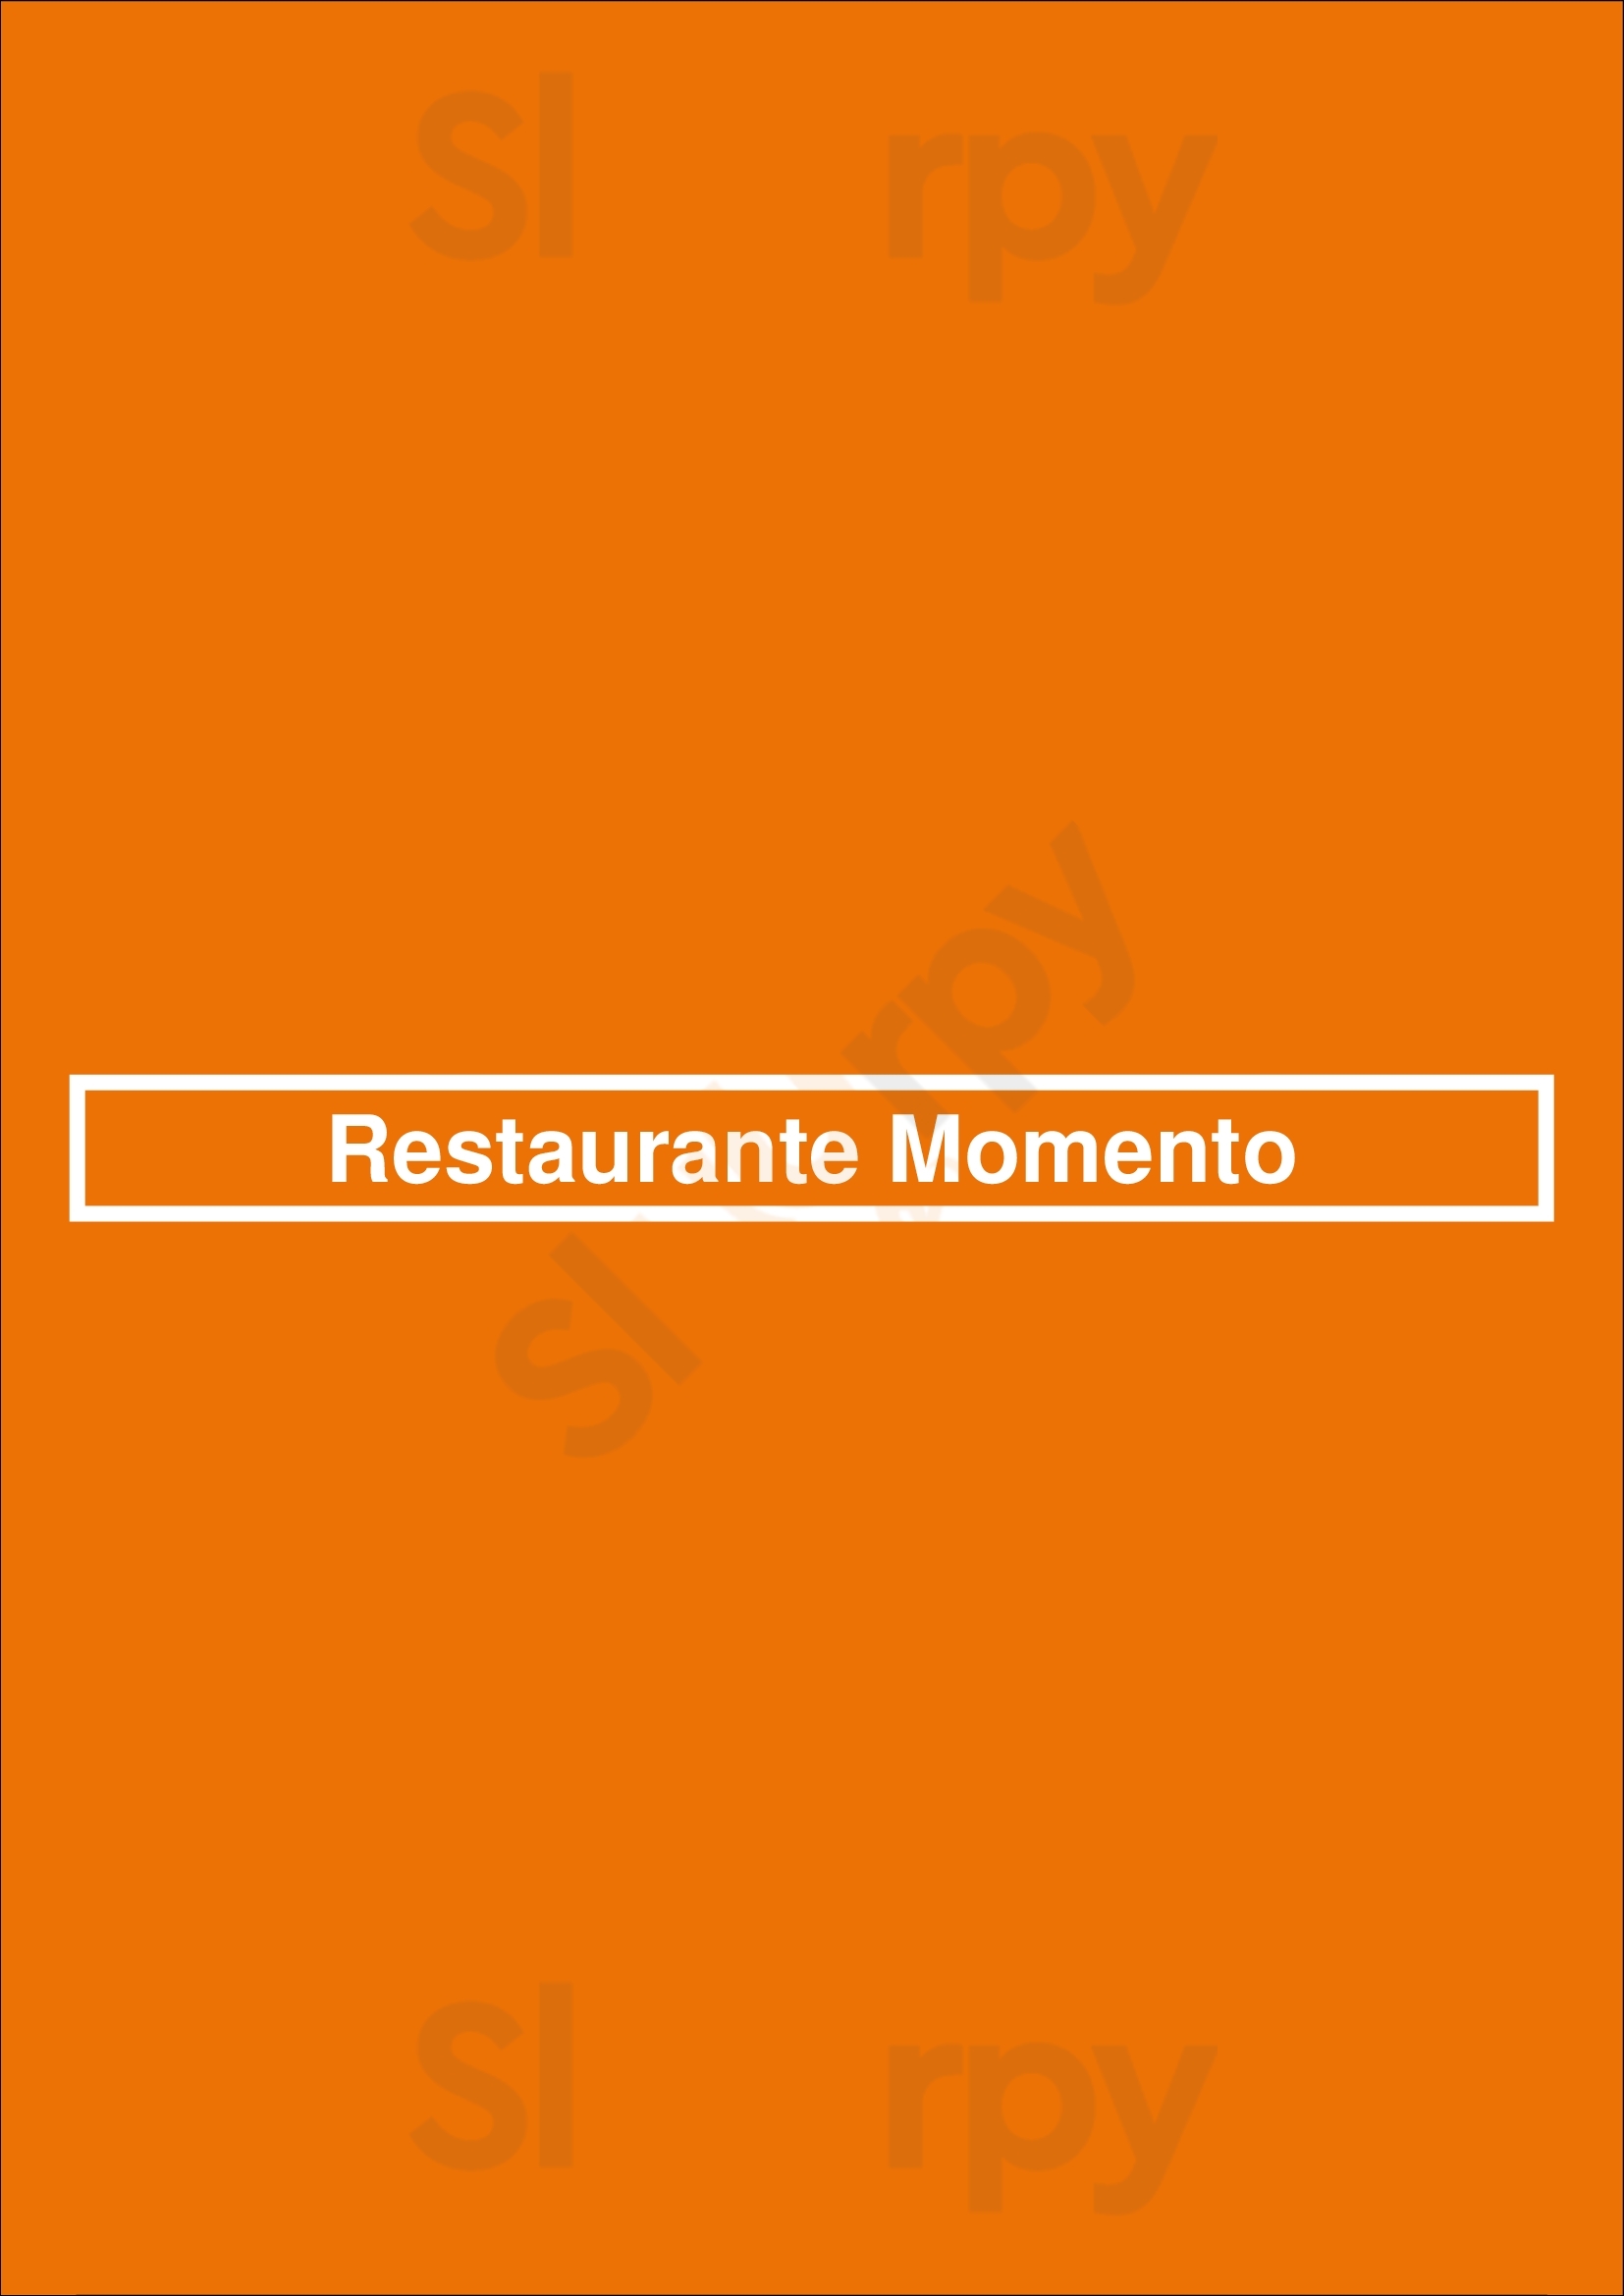 Restaurante Momento Lisboa Menu - 1